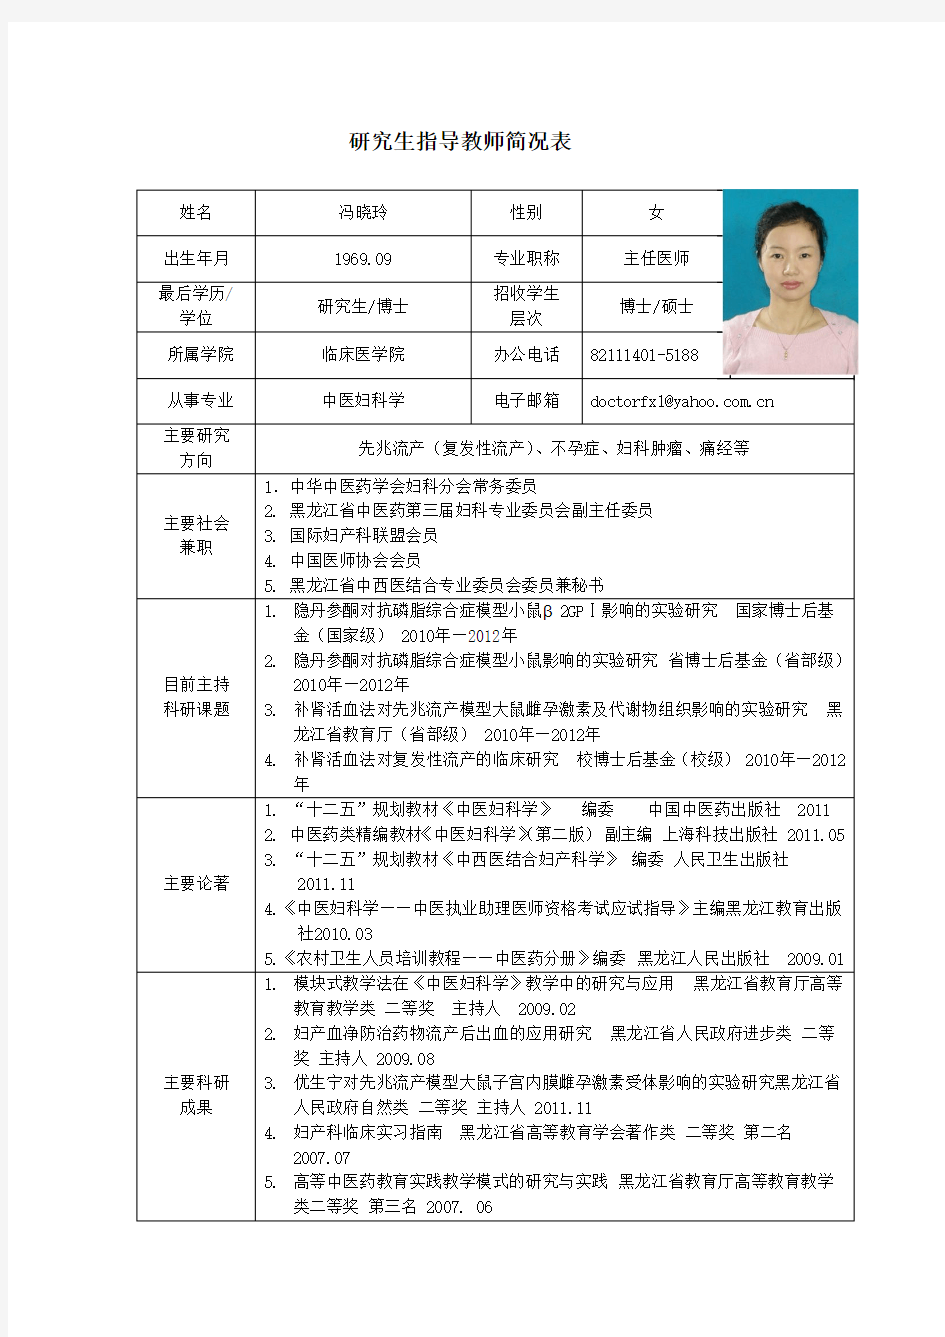 黑龙江中医药大学 博士研究生导师简介 冯晓玲